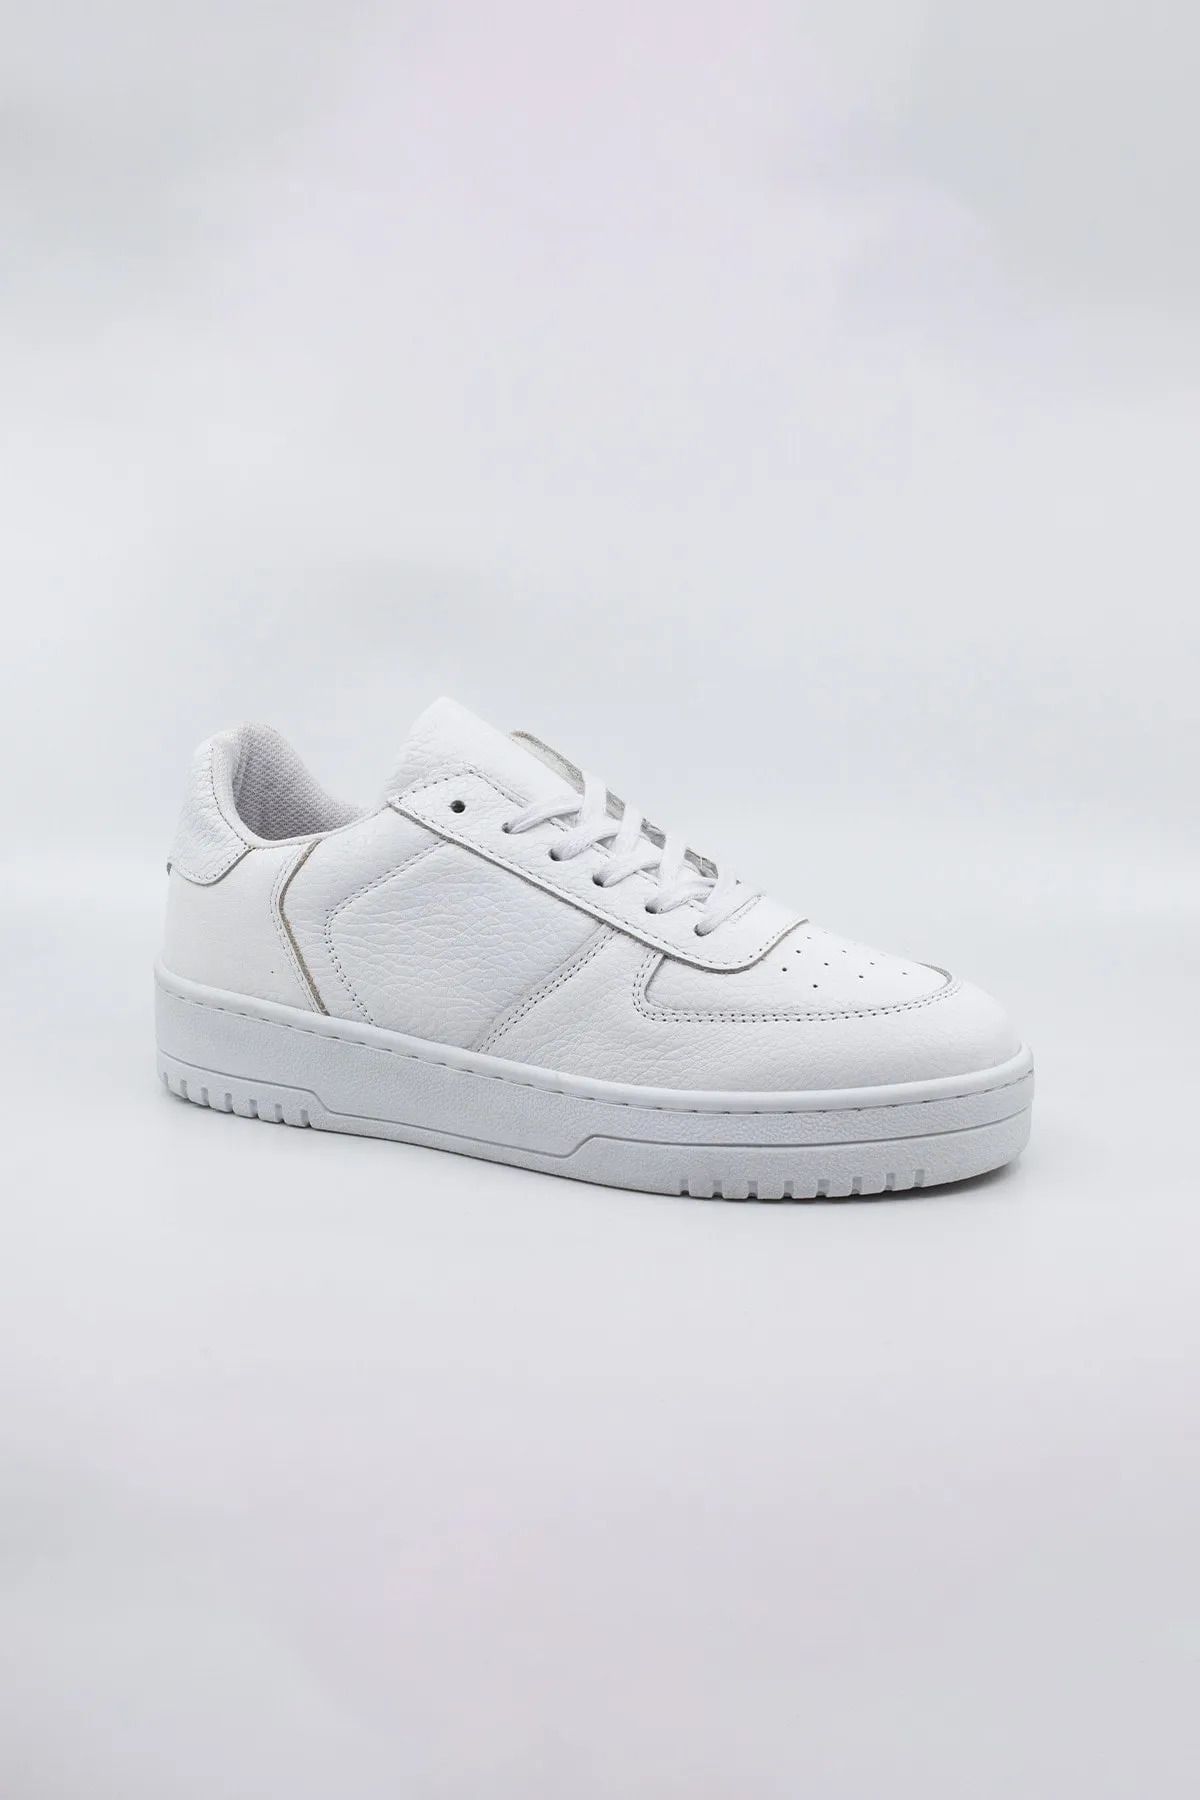 MAKRAS EXCLUSIVE Unisex Günlük Deri Sneaker Spor Ayakkabı (beyaz)